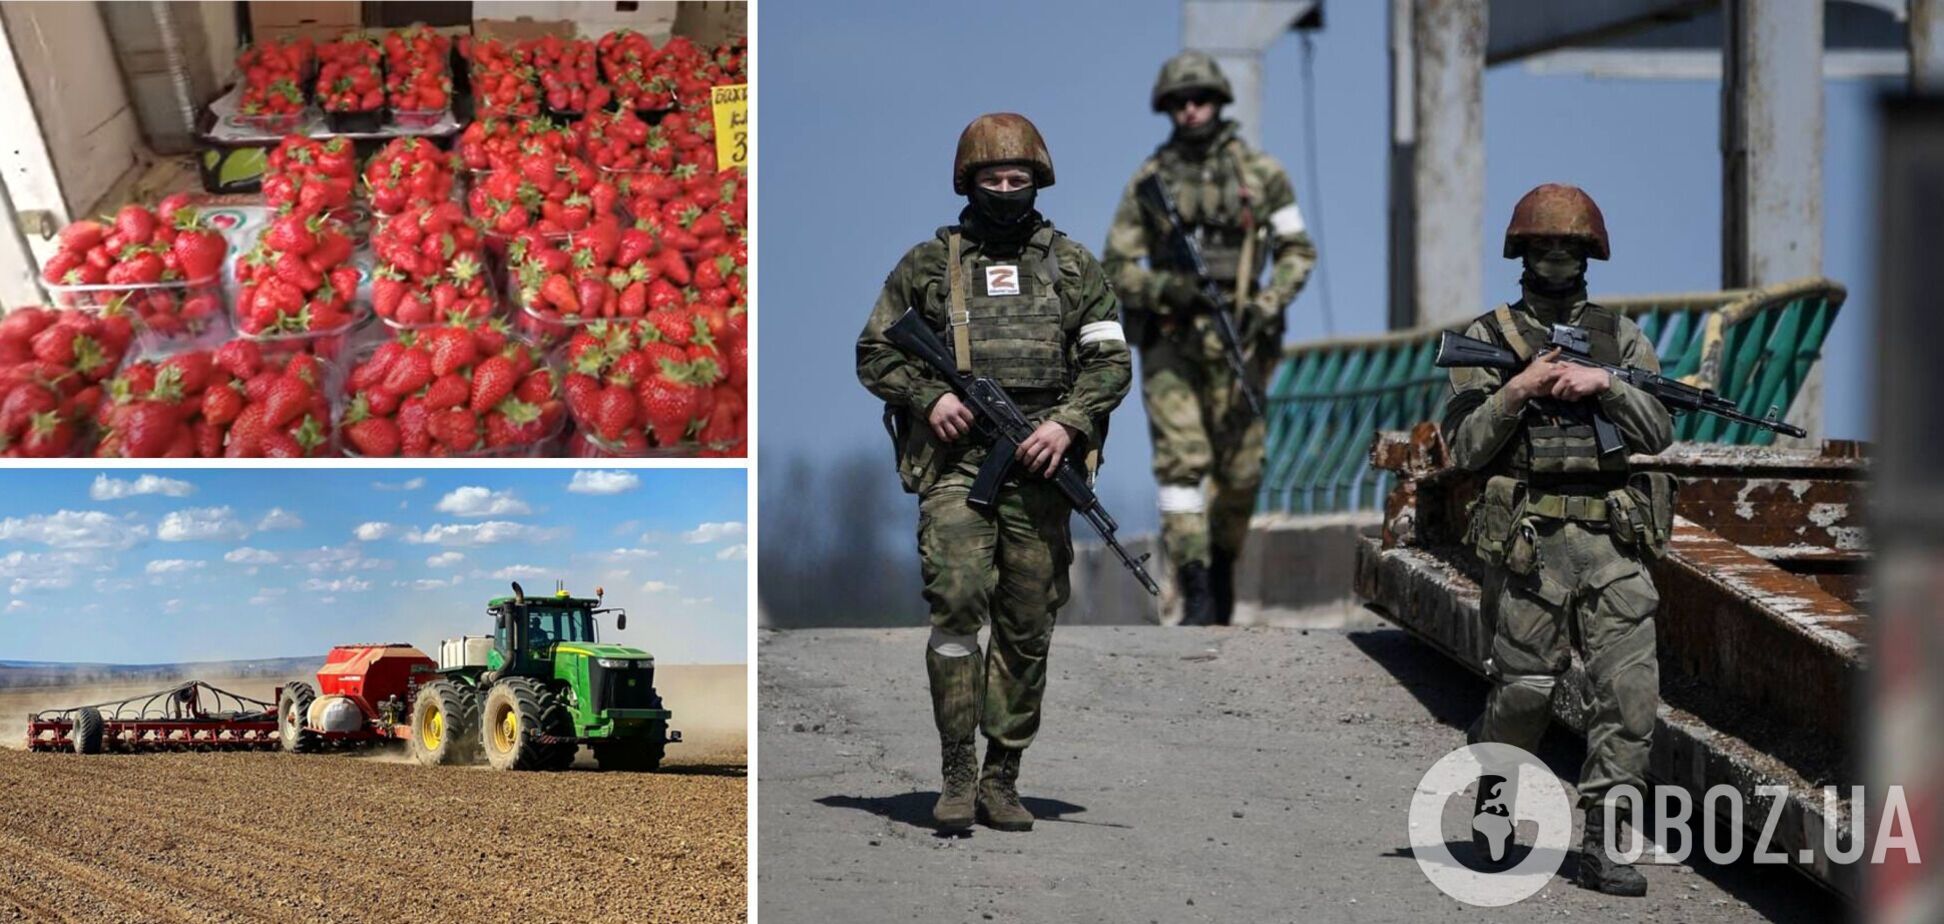 Безкоштовна вода та дорогі овочі: як у Криму наживаються на награбованому в Україні